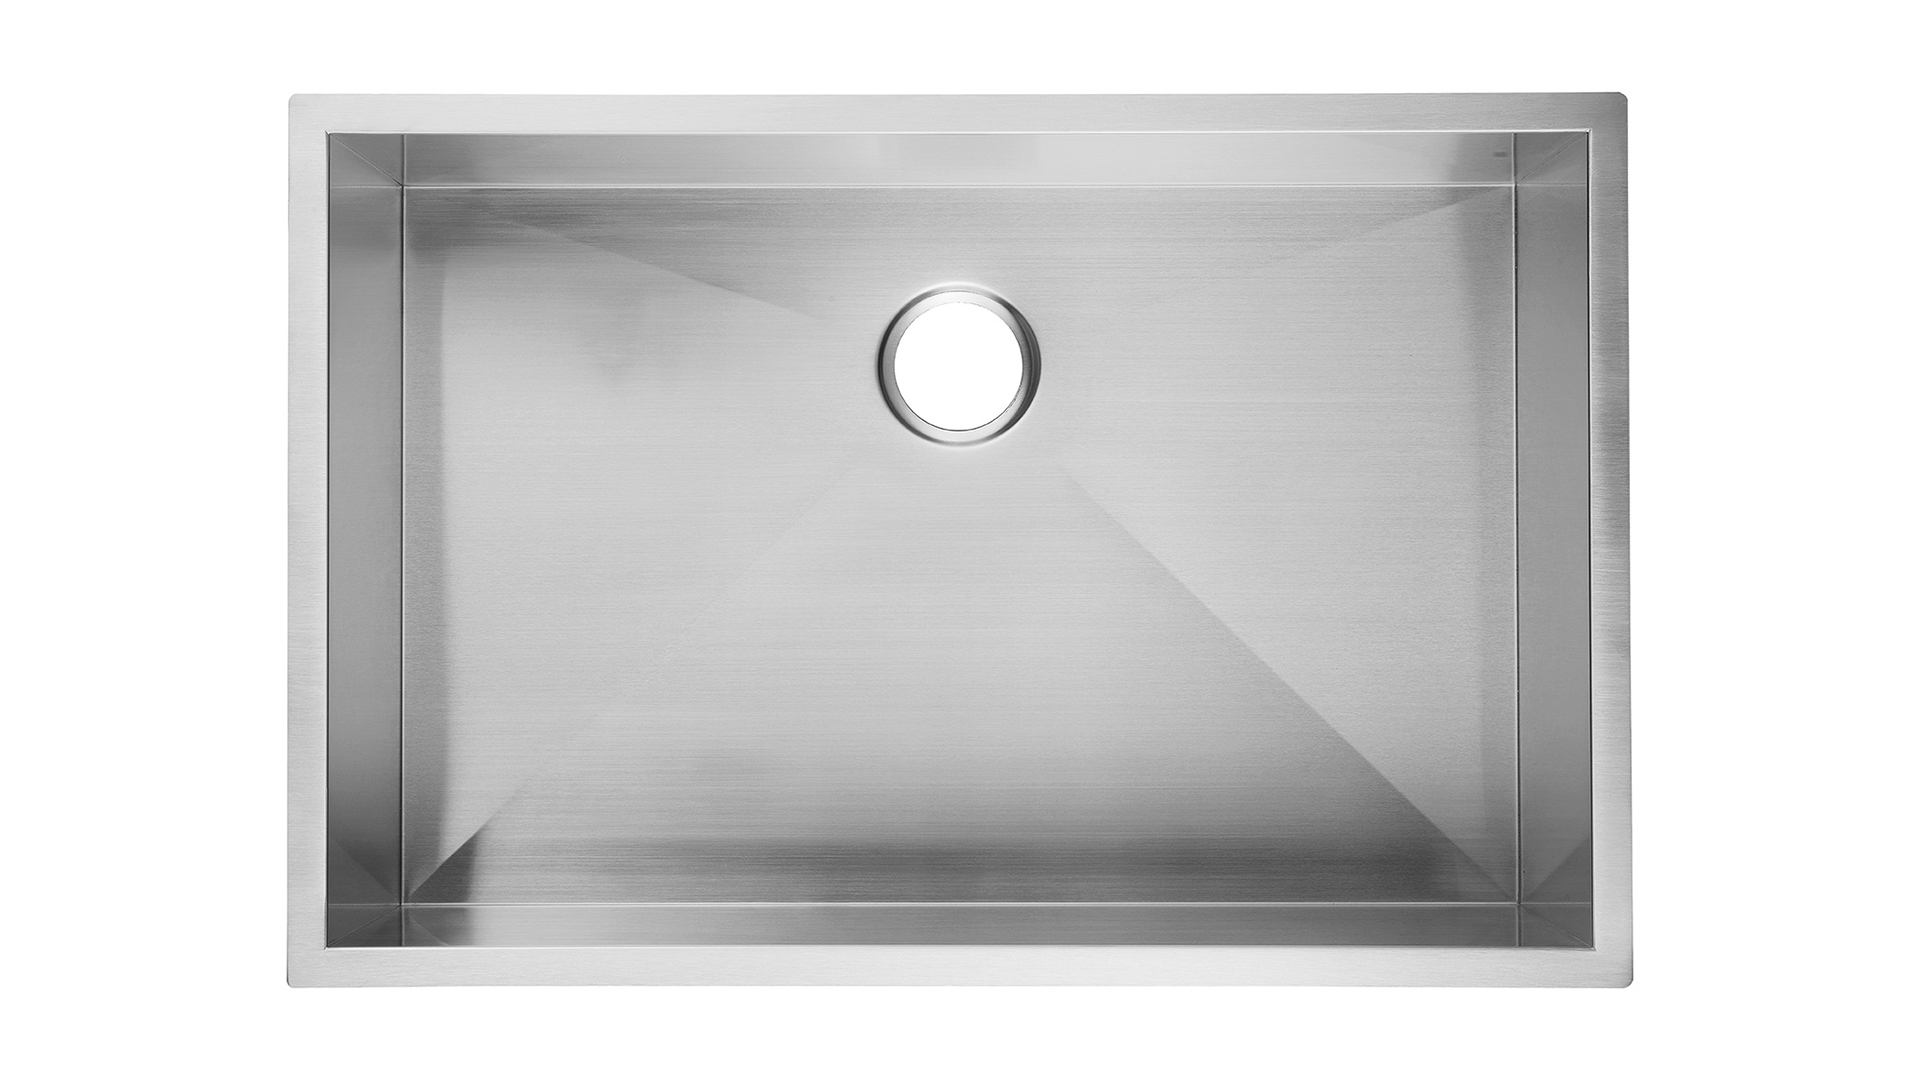 28 inch Undermount Kitchen Sink Stainless Steel 9 inch deep, Aquacubic Undermount Kitchen Sink